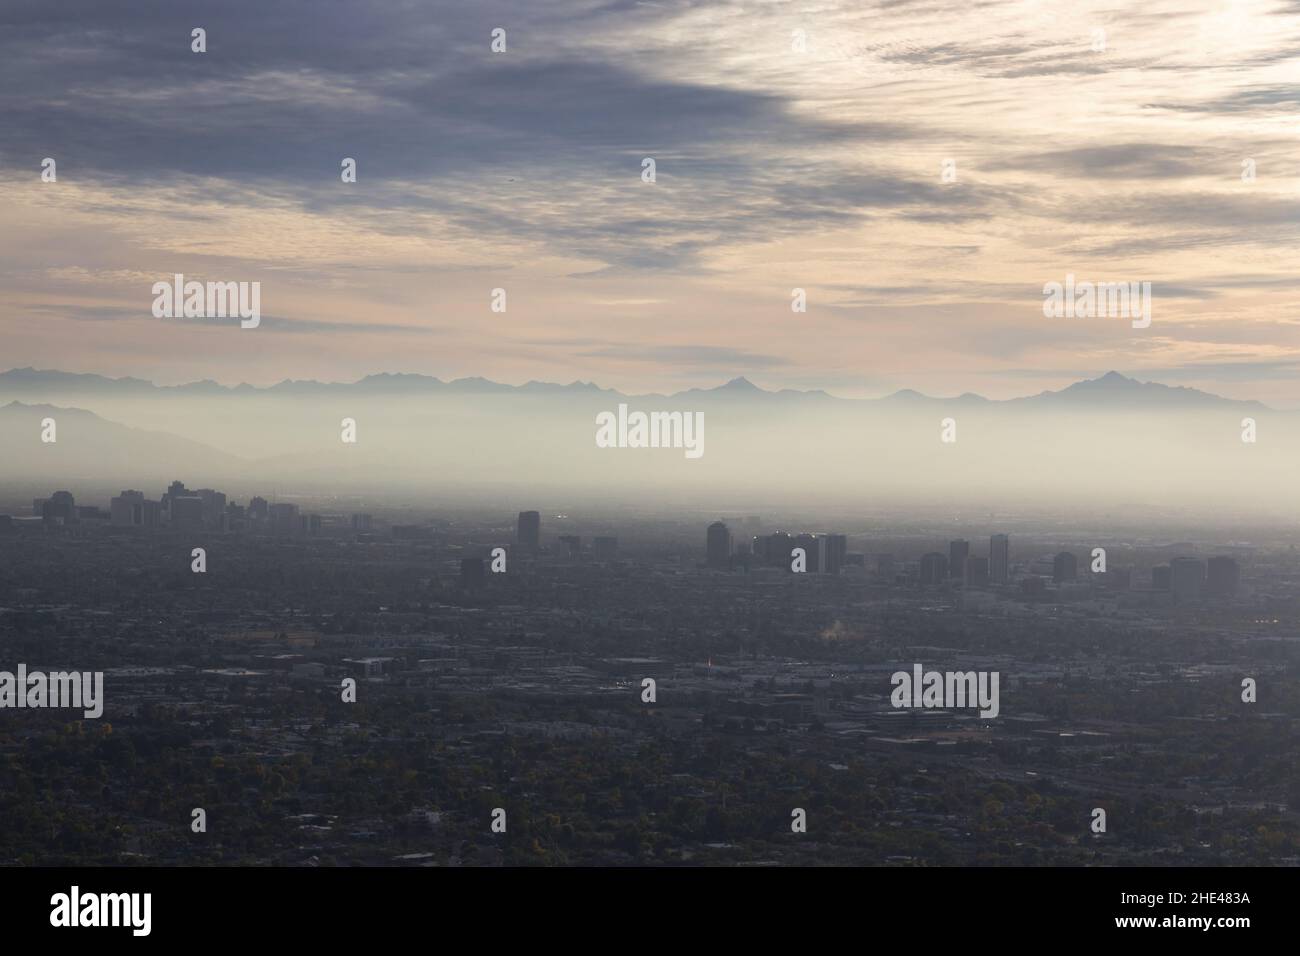 Luftlandschaftsansicht Smog Verschmutzungsschicht über der Metropolstadt Phoenix Valley vom Gipfel des Piestewa Peak im Phoenix Arizona Mountain Preserve Stockfoto